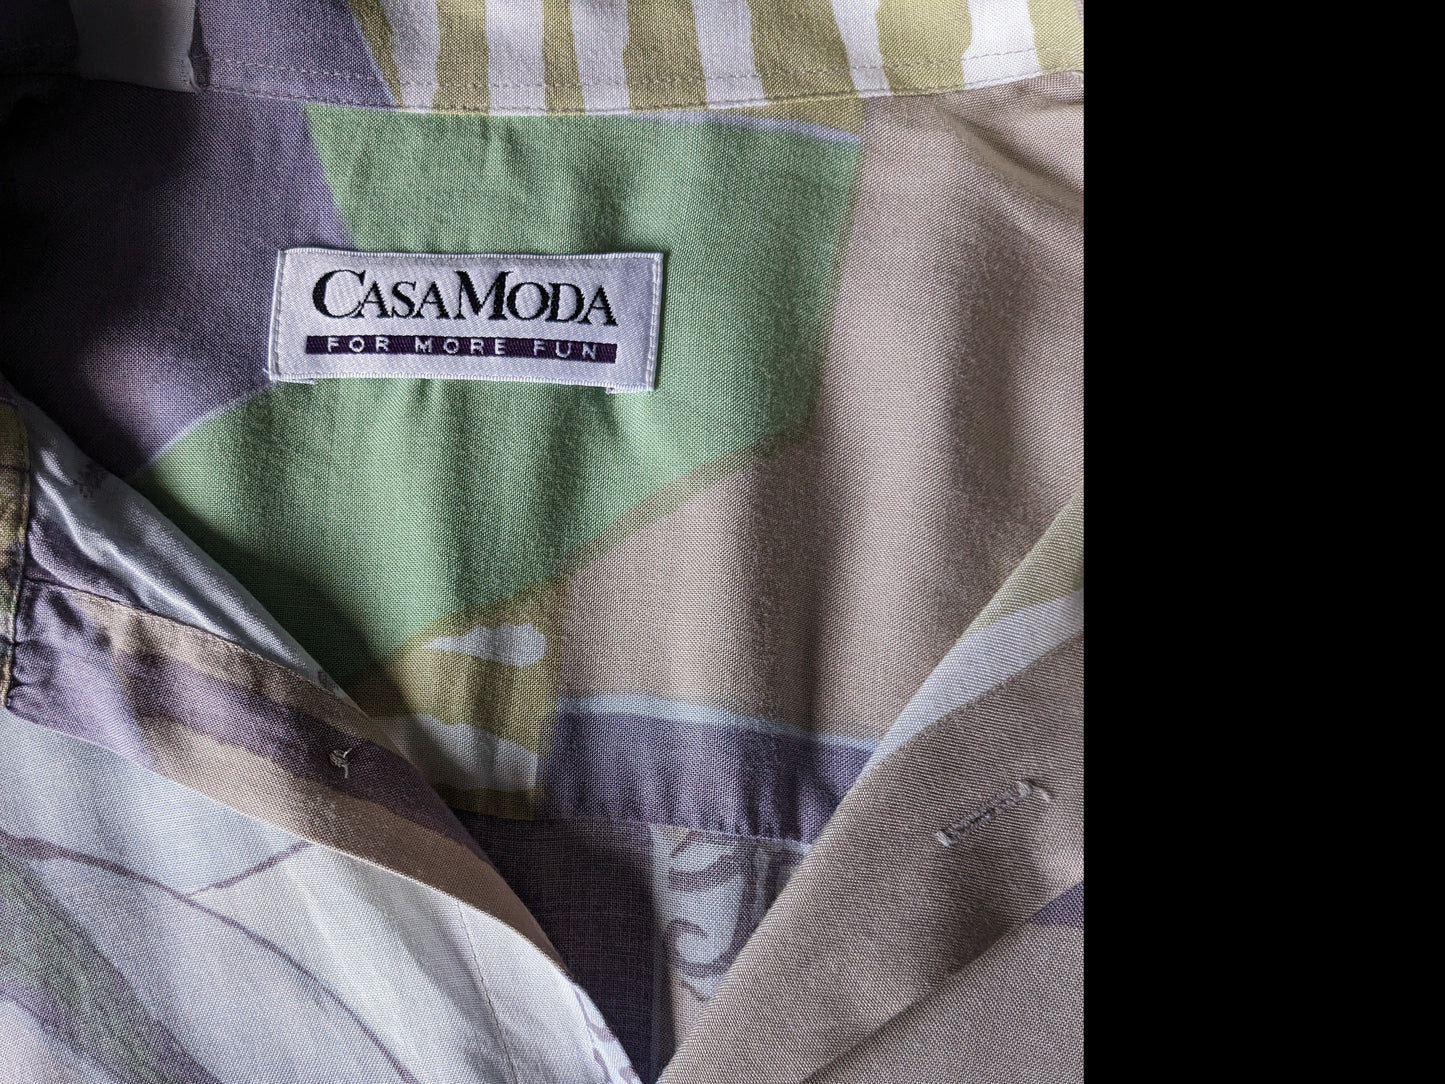 Shirt cotta di Casa Moda vintage. Stampa gialla verde viola. Dimensione 2xl / xxl.